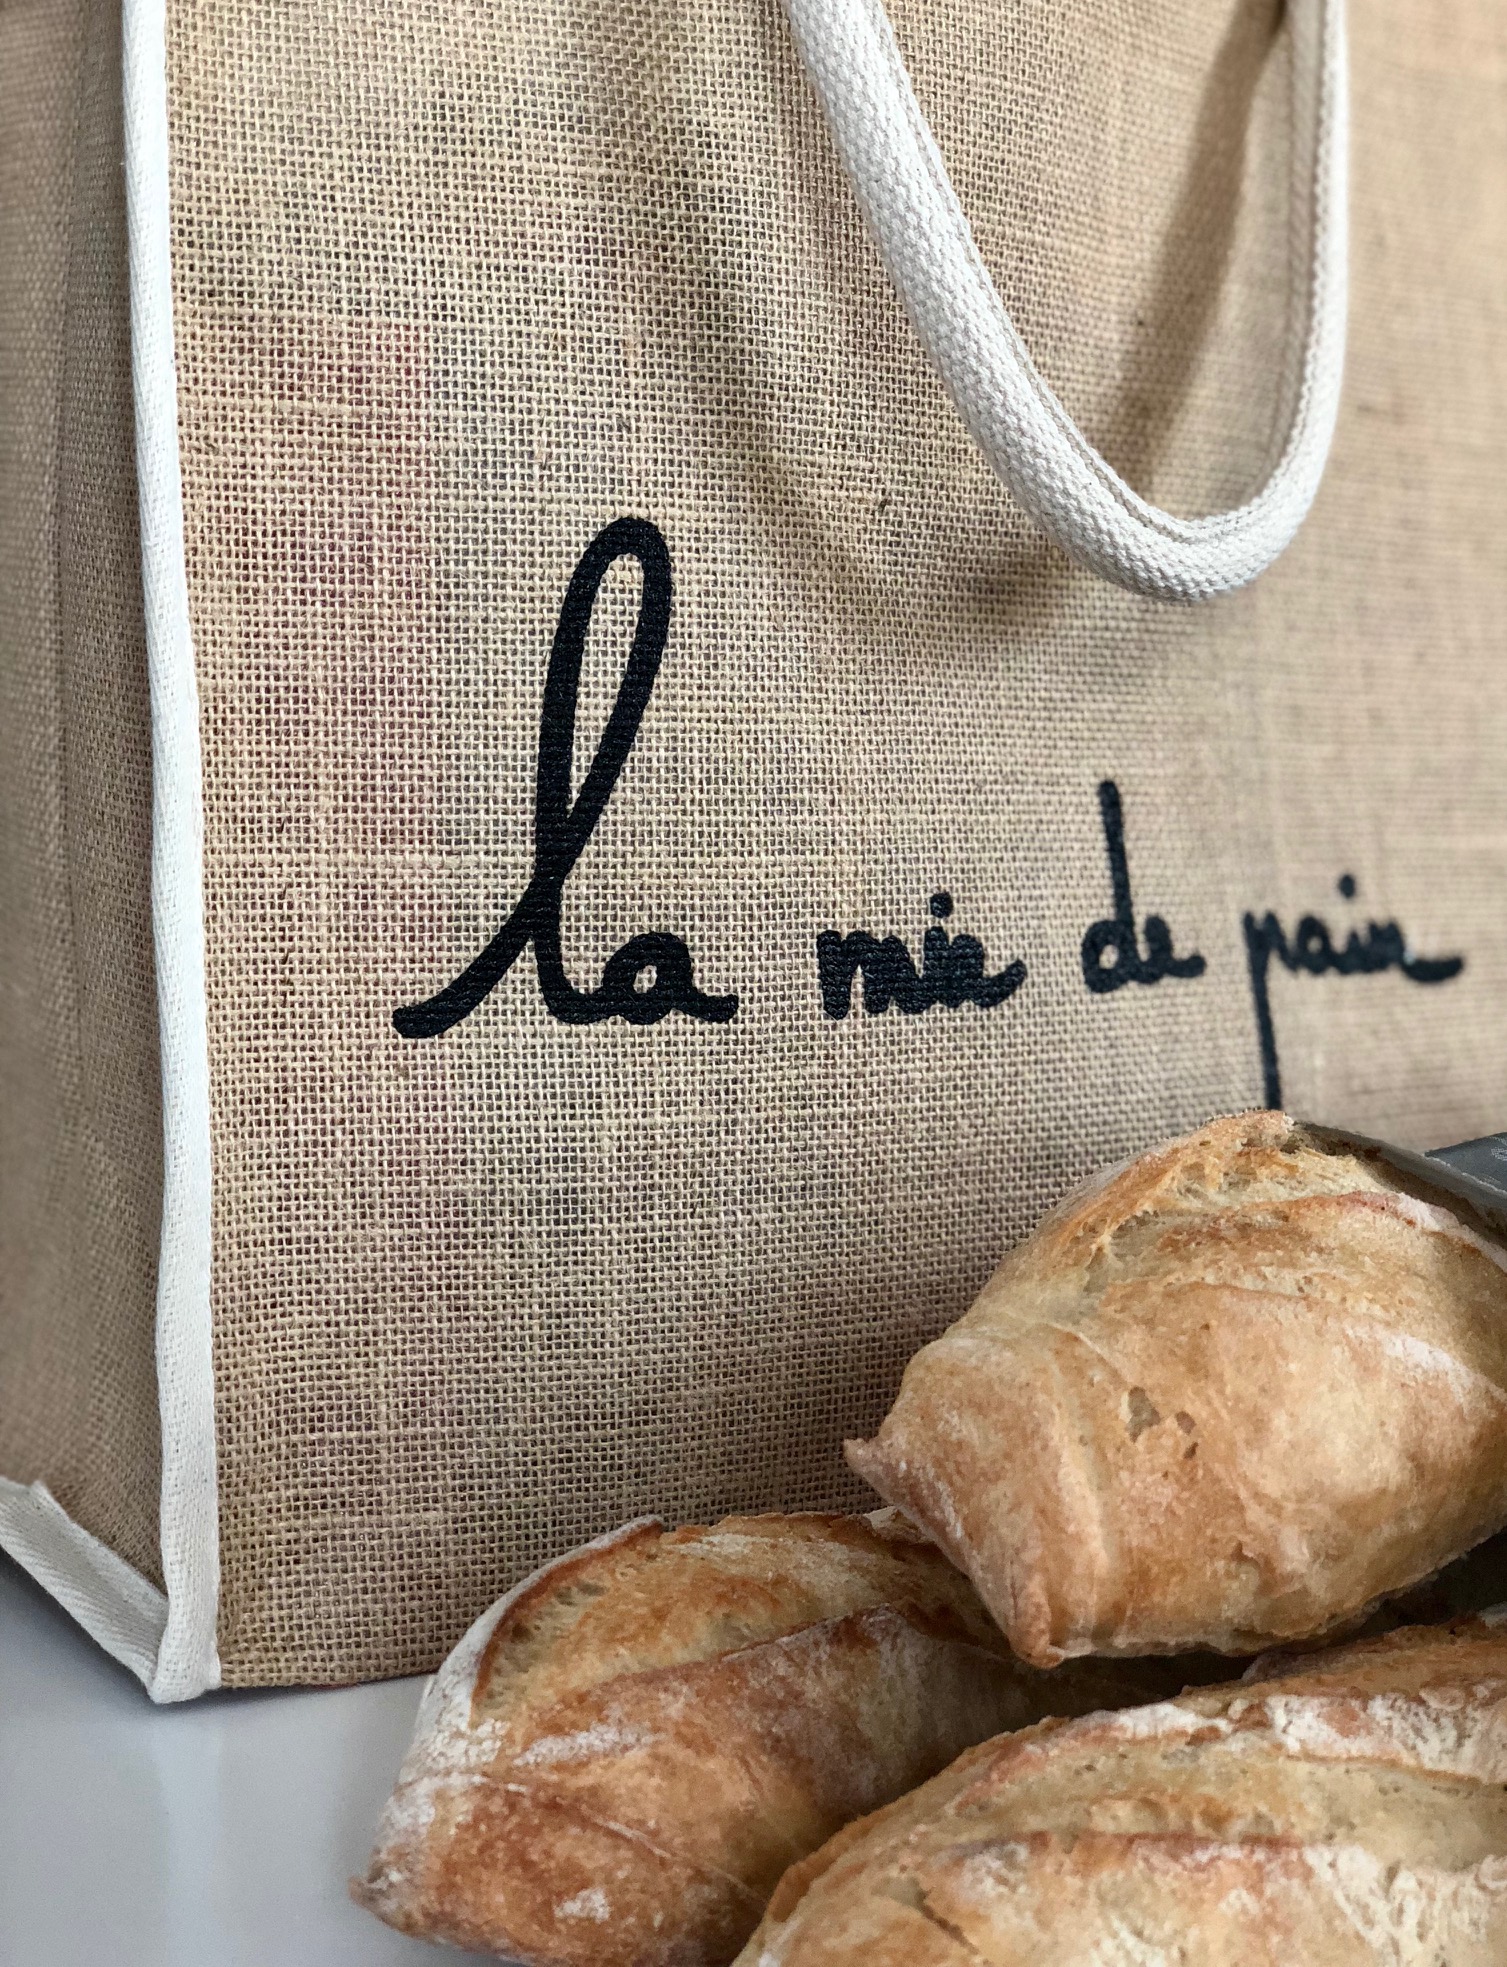 sac-en-toile-de-jute-lamiedepain-boulangerie-1